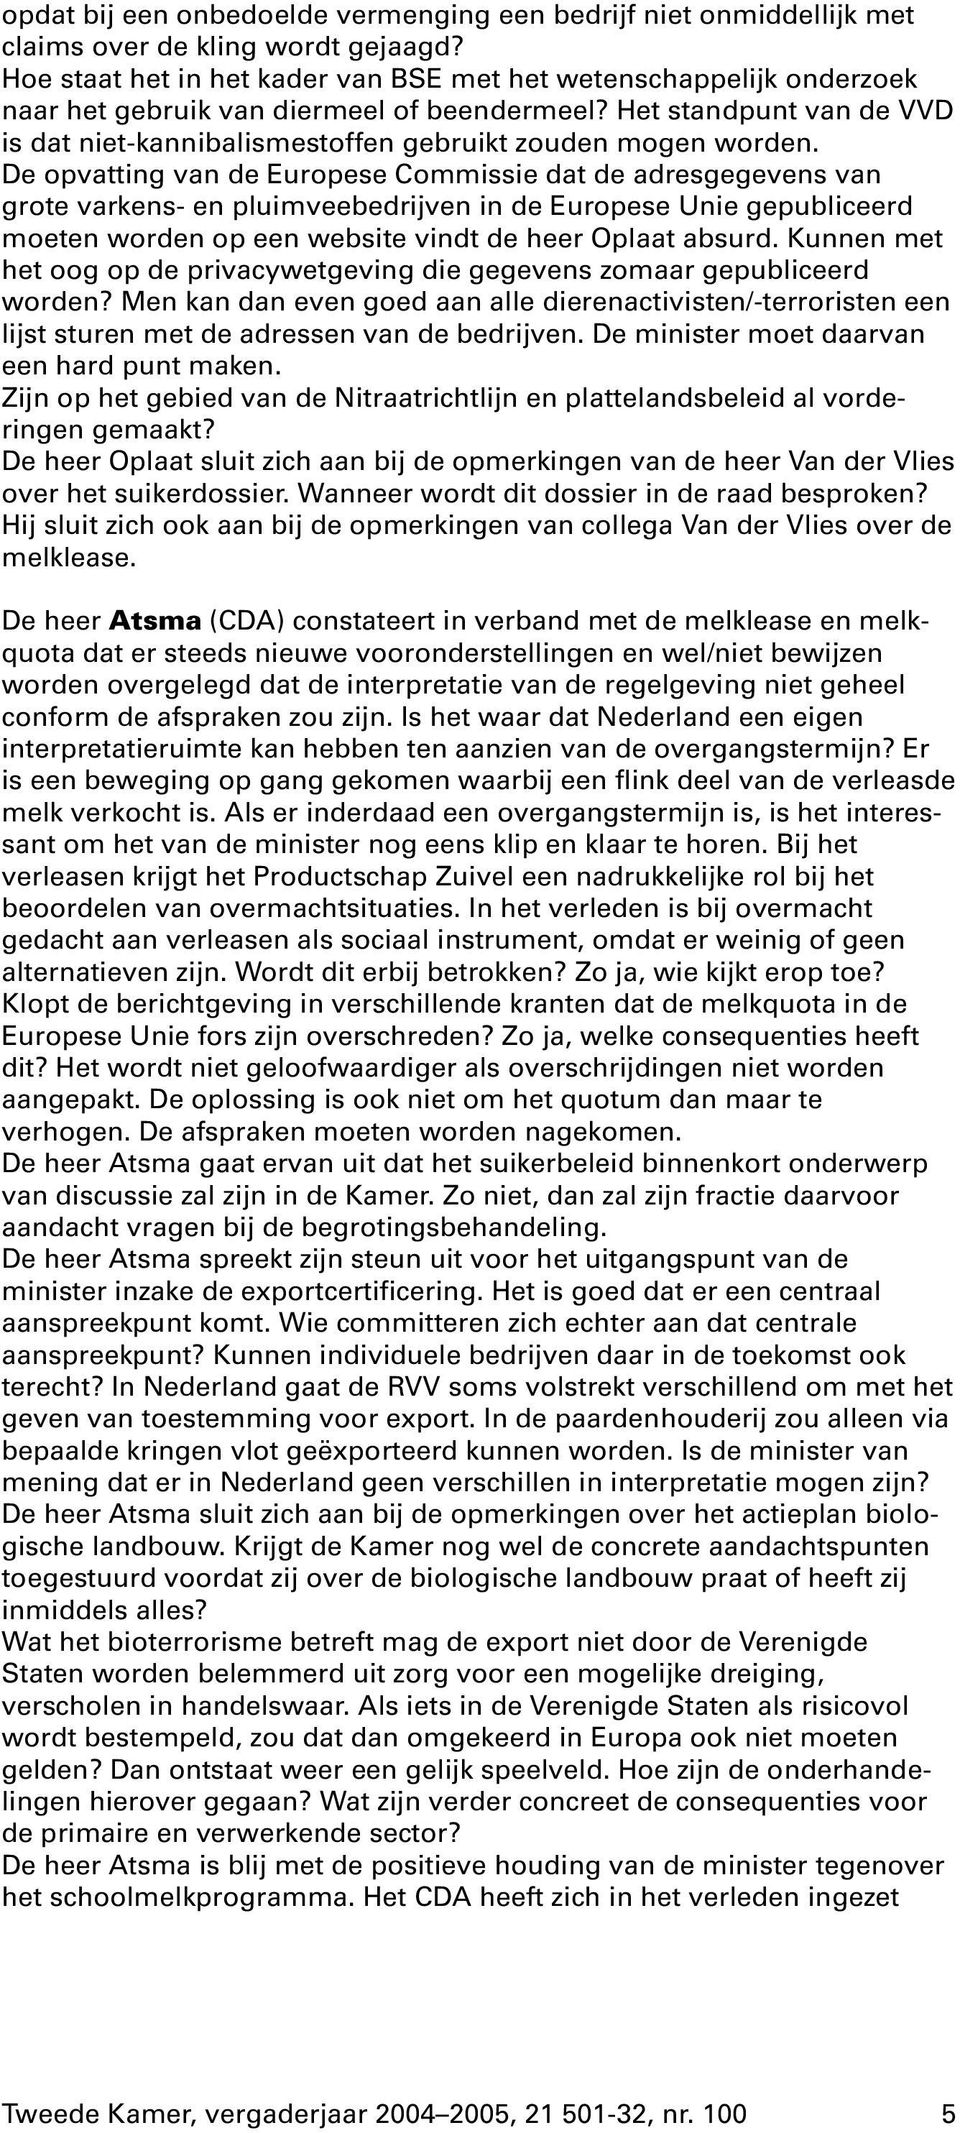 Het standpunt van de VVD is dat niet-kannibalismestoffen gebruikt zouden mogen worden.